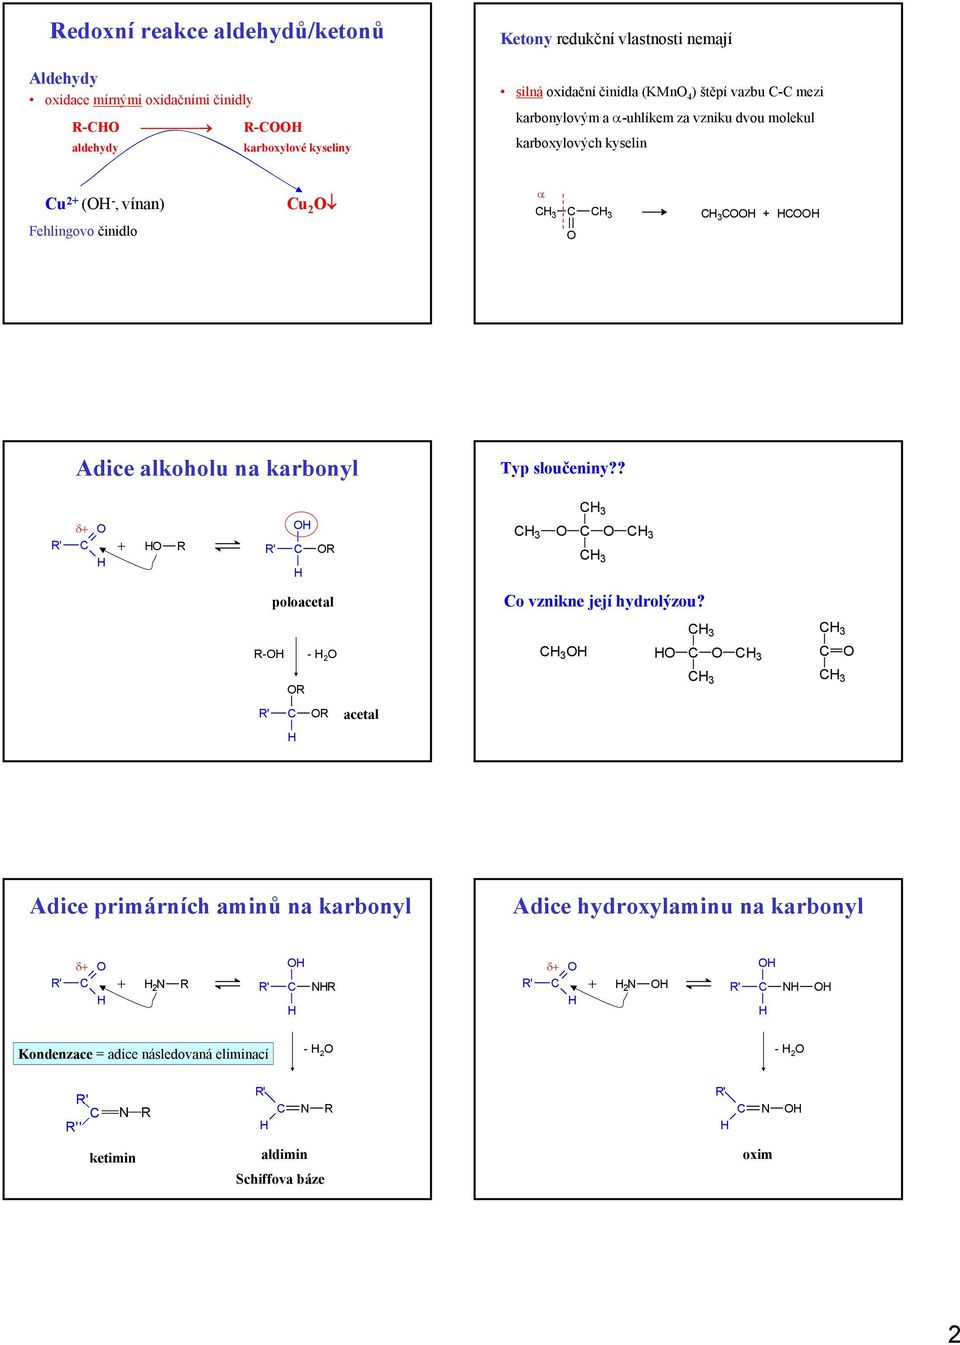 α 3 3 3 Adice alkoholu na karbonyl Typ sloučeniny?? δ ' ' poloacetal 3 3 3 3 o vznikne její hydrolýzou?